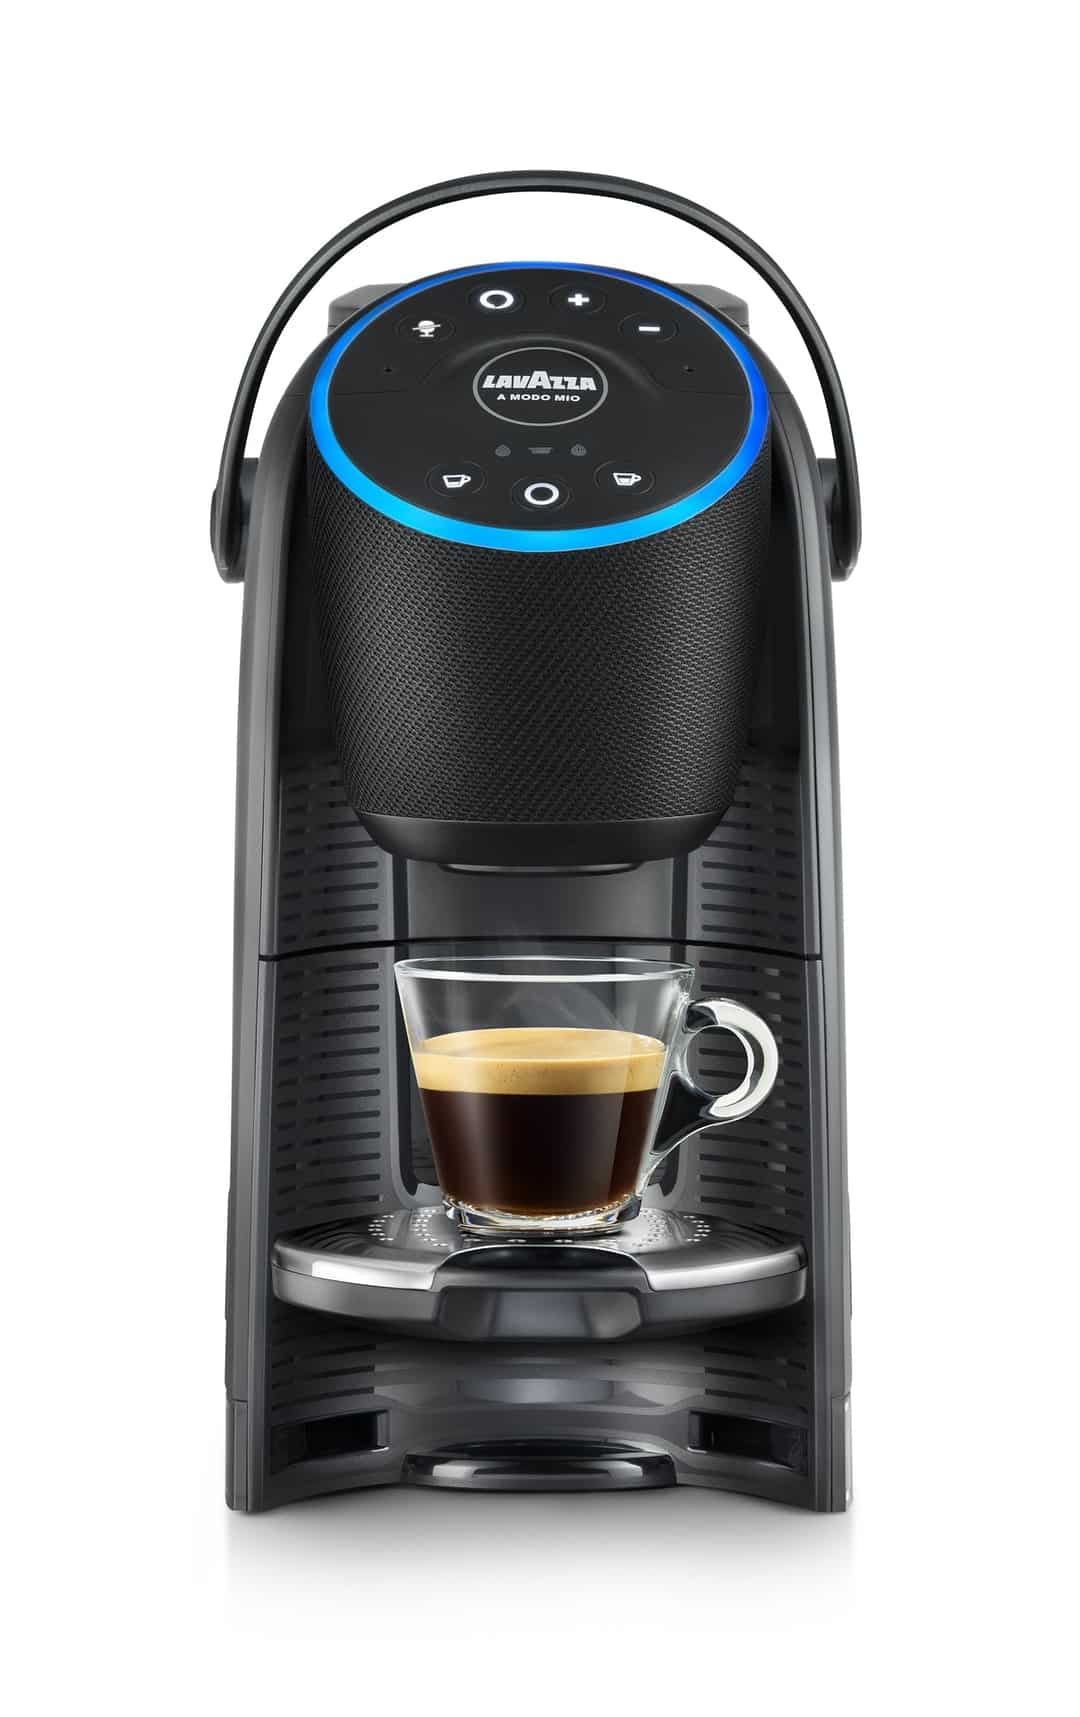 Voicy, la macchina del caffè smart con Alexa integrata